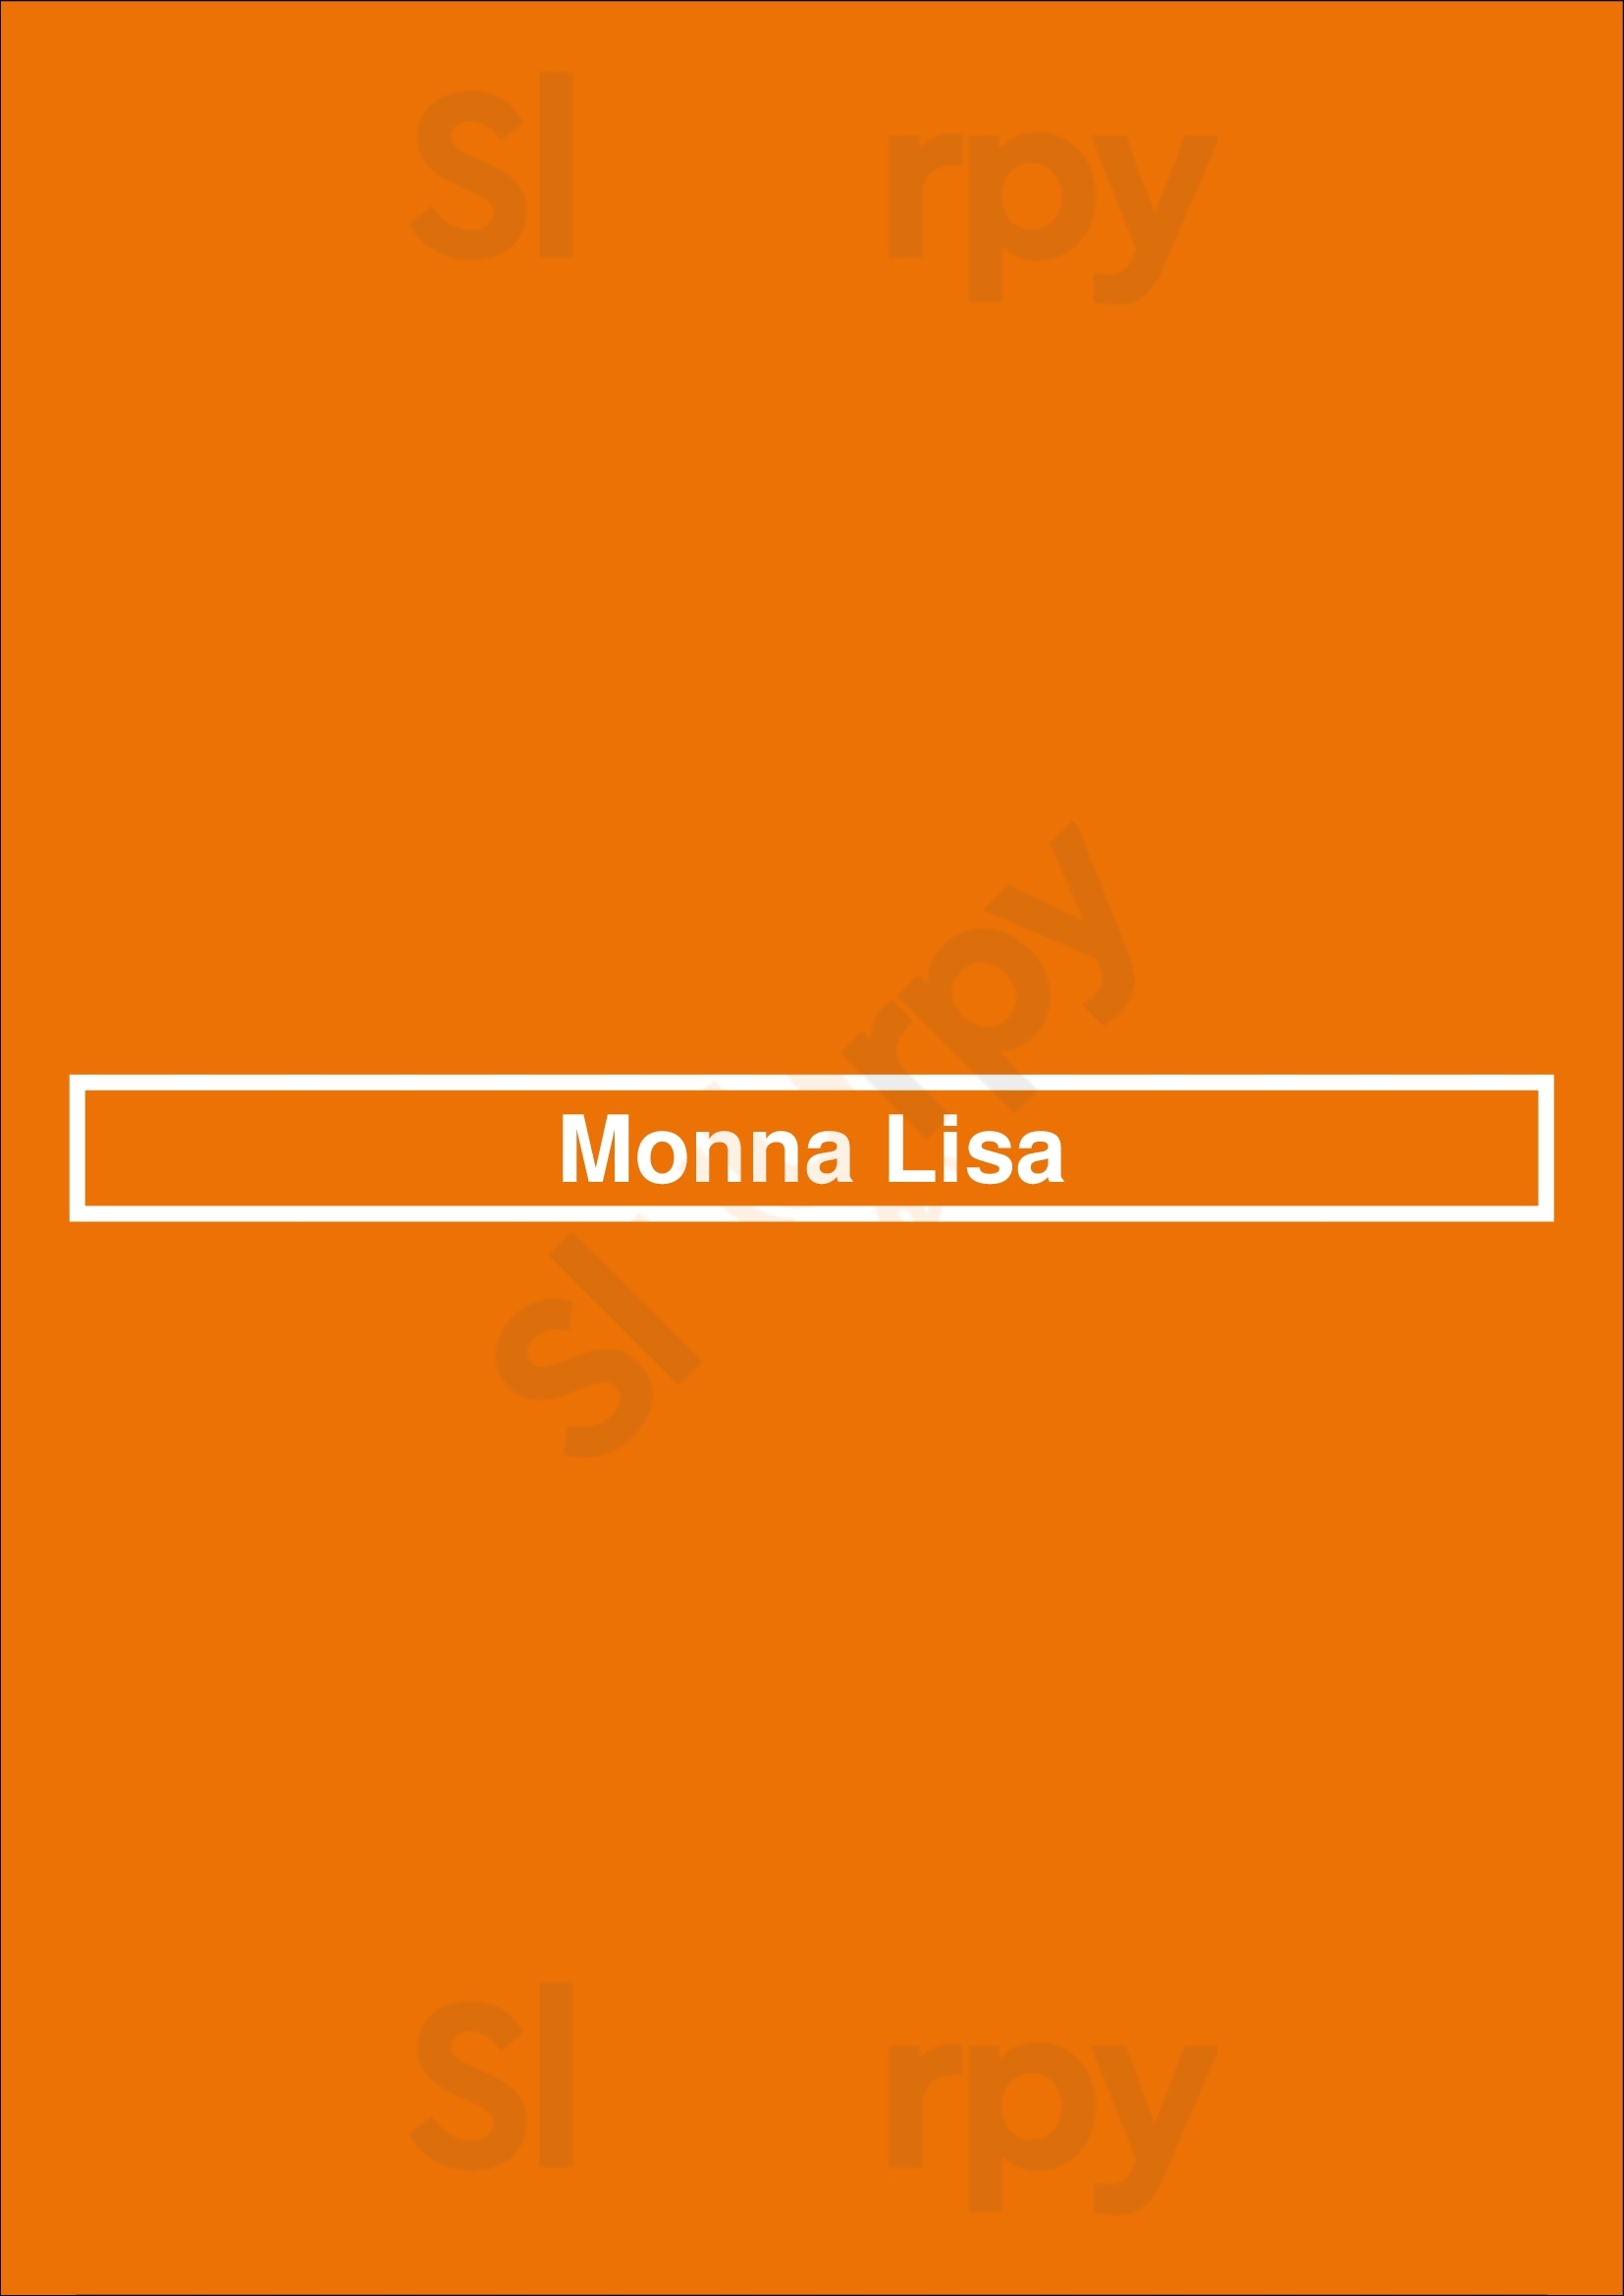 Monna Lisa Lyon Menu - 1